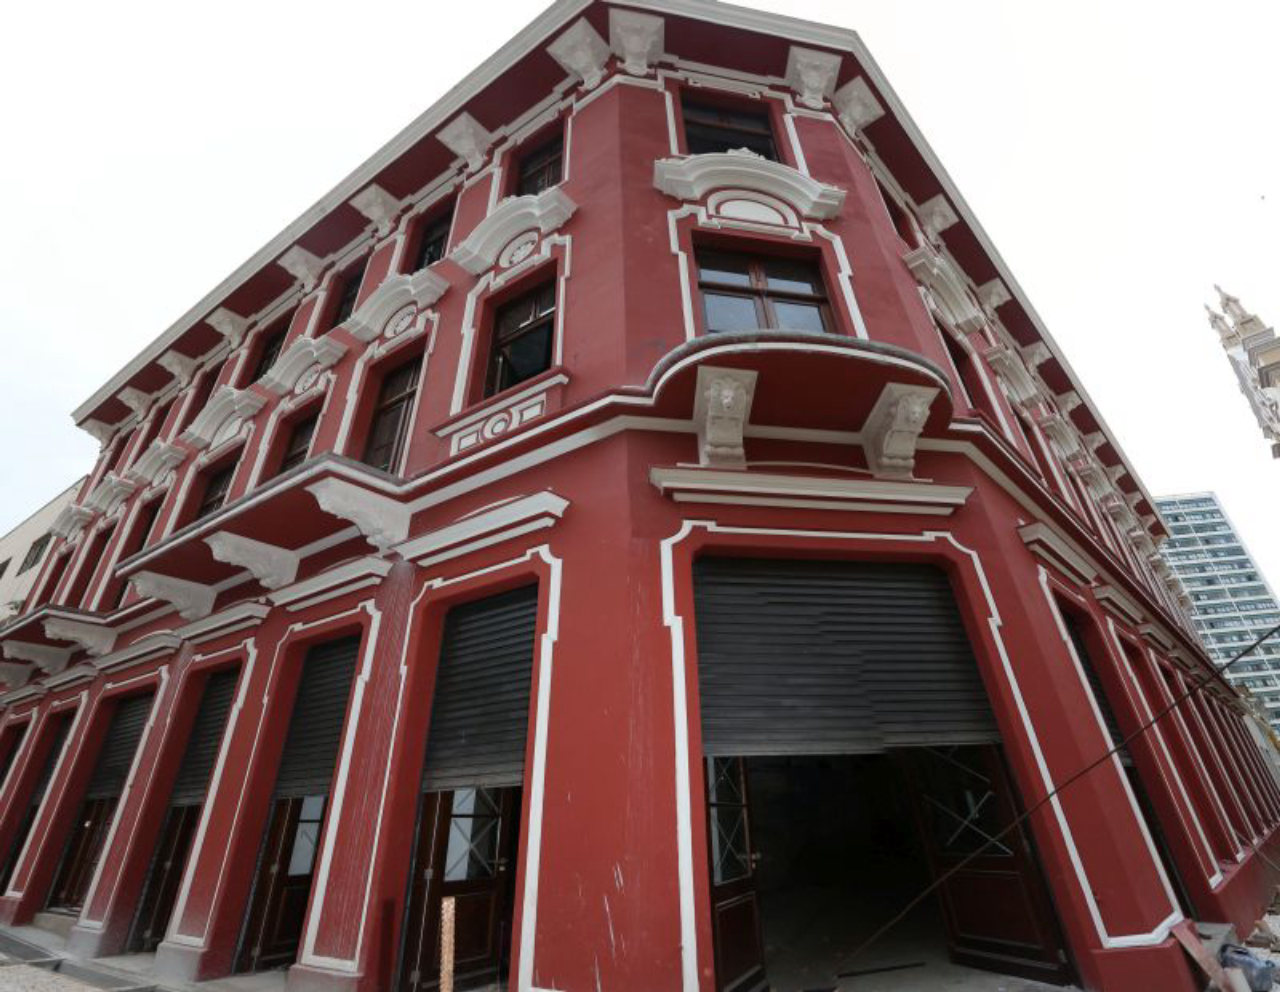 Casa Hauer, sede da antiga Ferragens Hauer, é um dos imóveis cadastrados como de Interesse de Preservação na cidade. Foto: Ivonaldo Alexandre/Gazeta do Povo